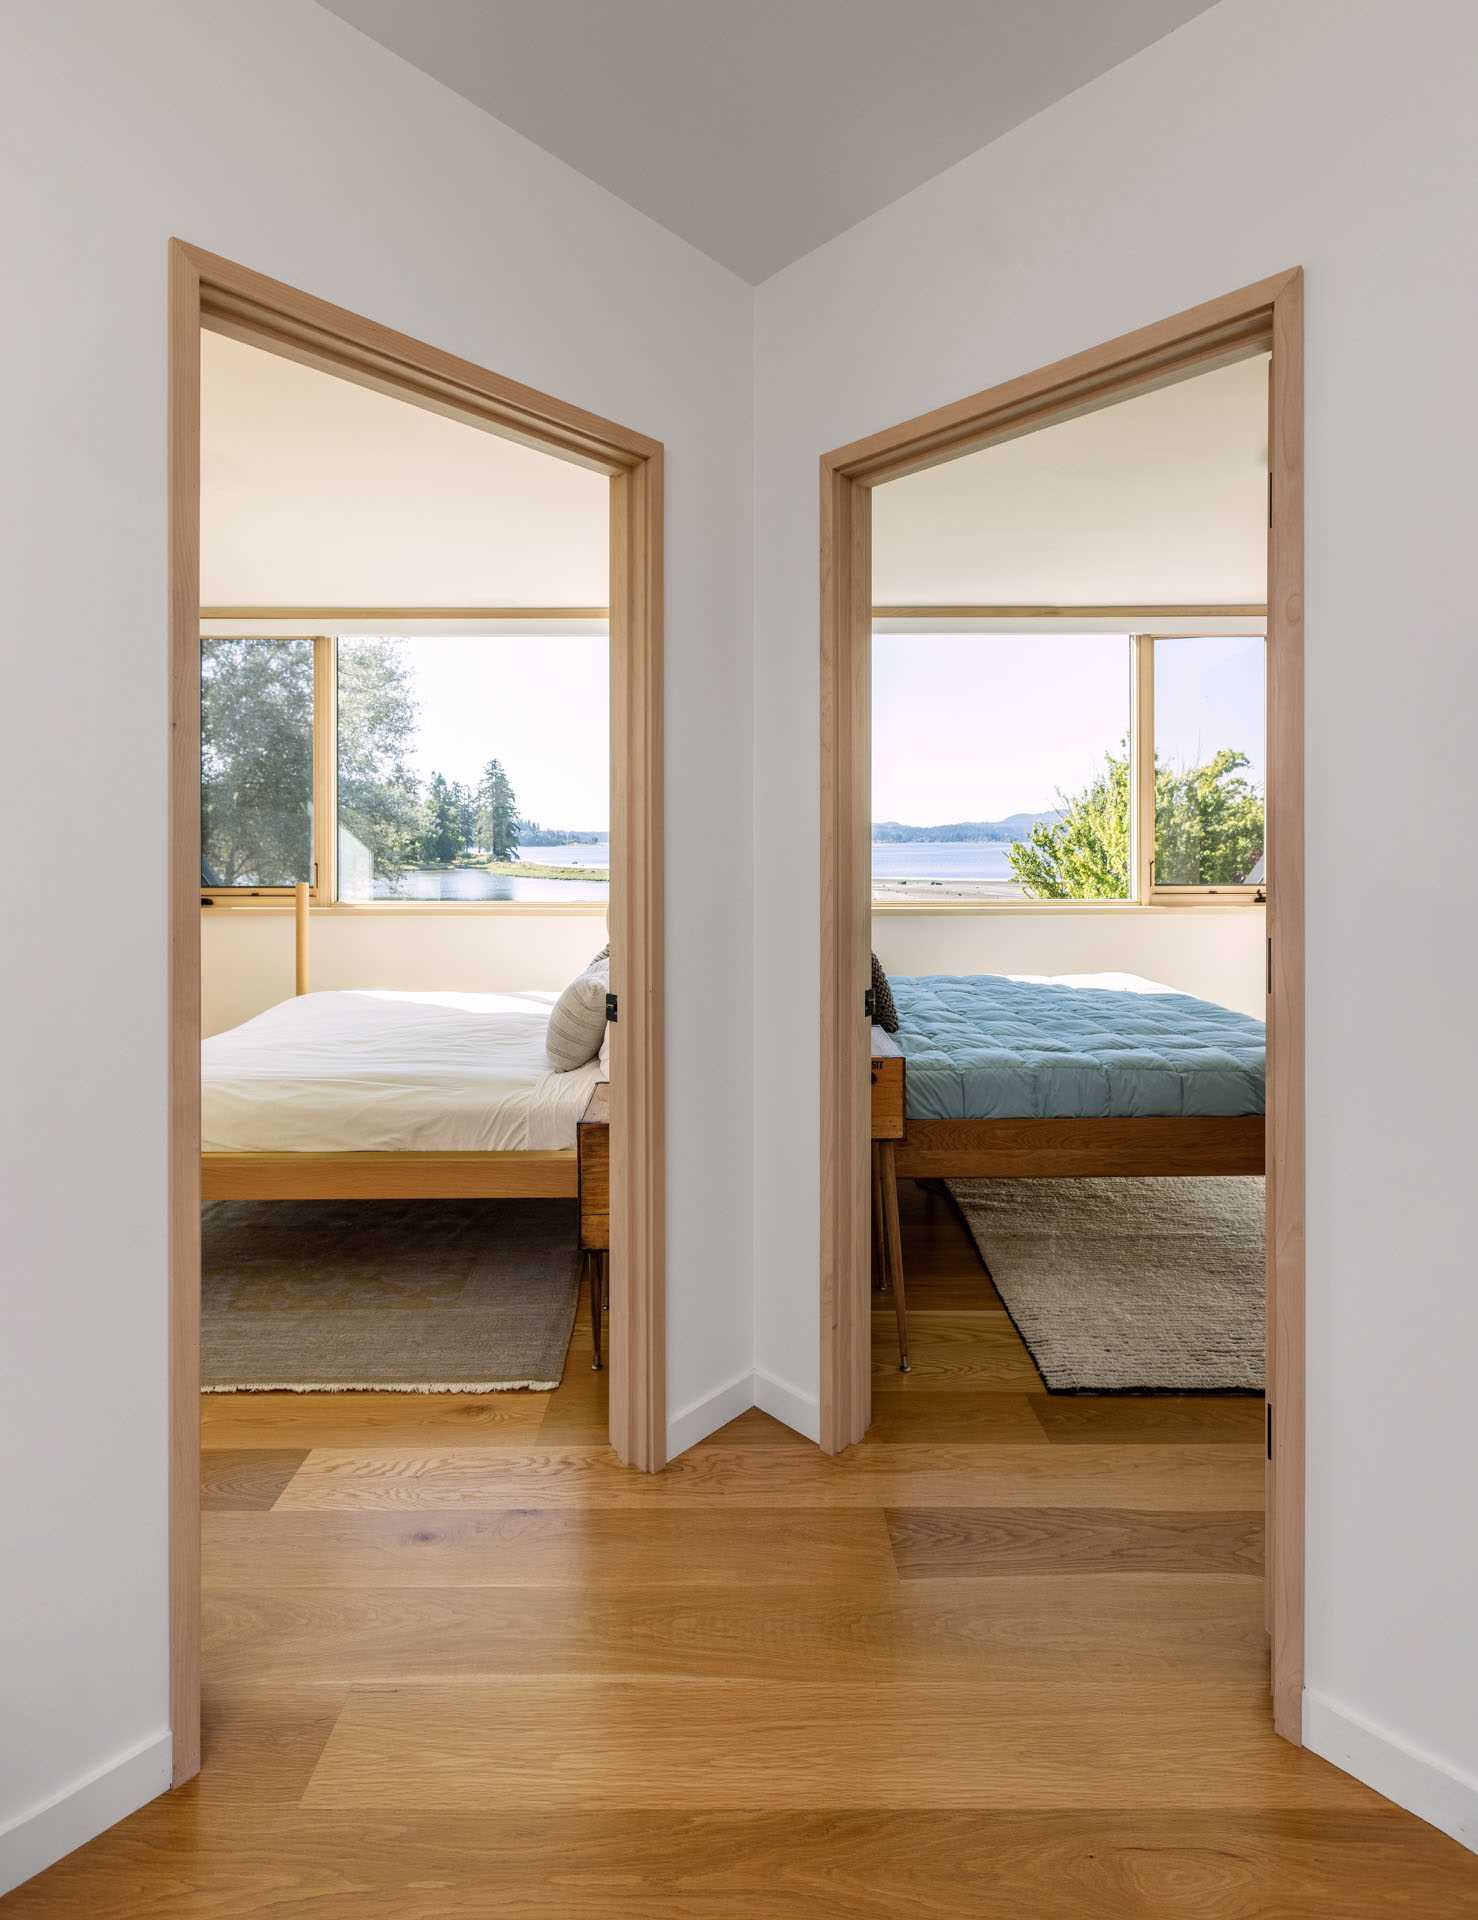 دو اتاق خواب با طرح آینه ای.